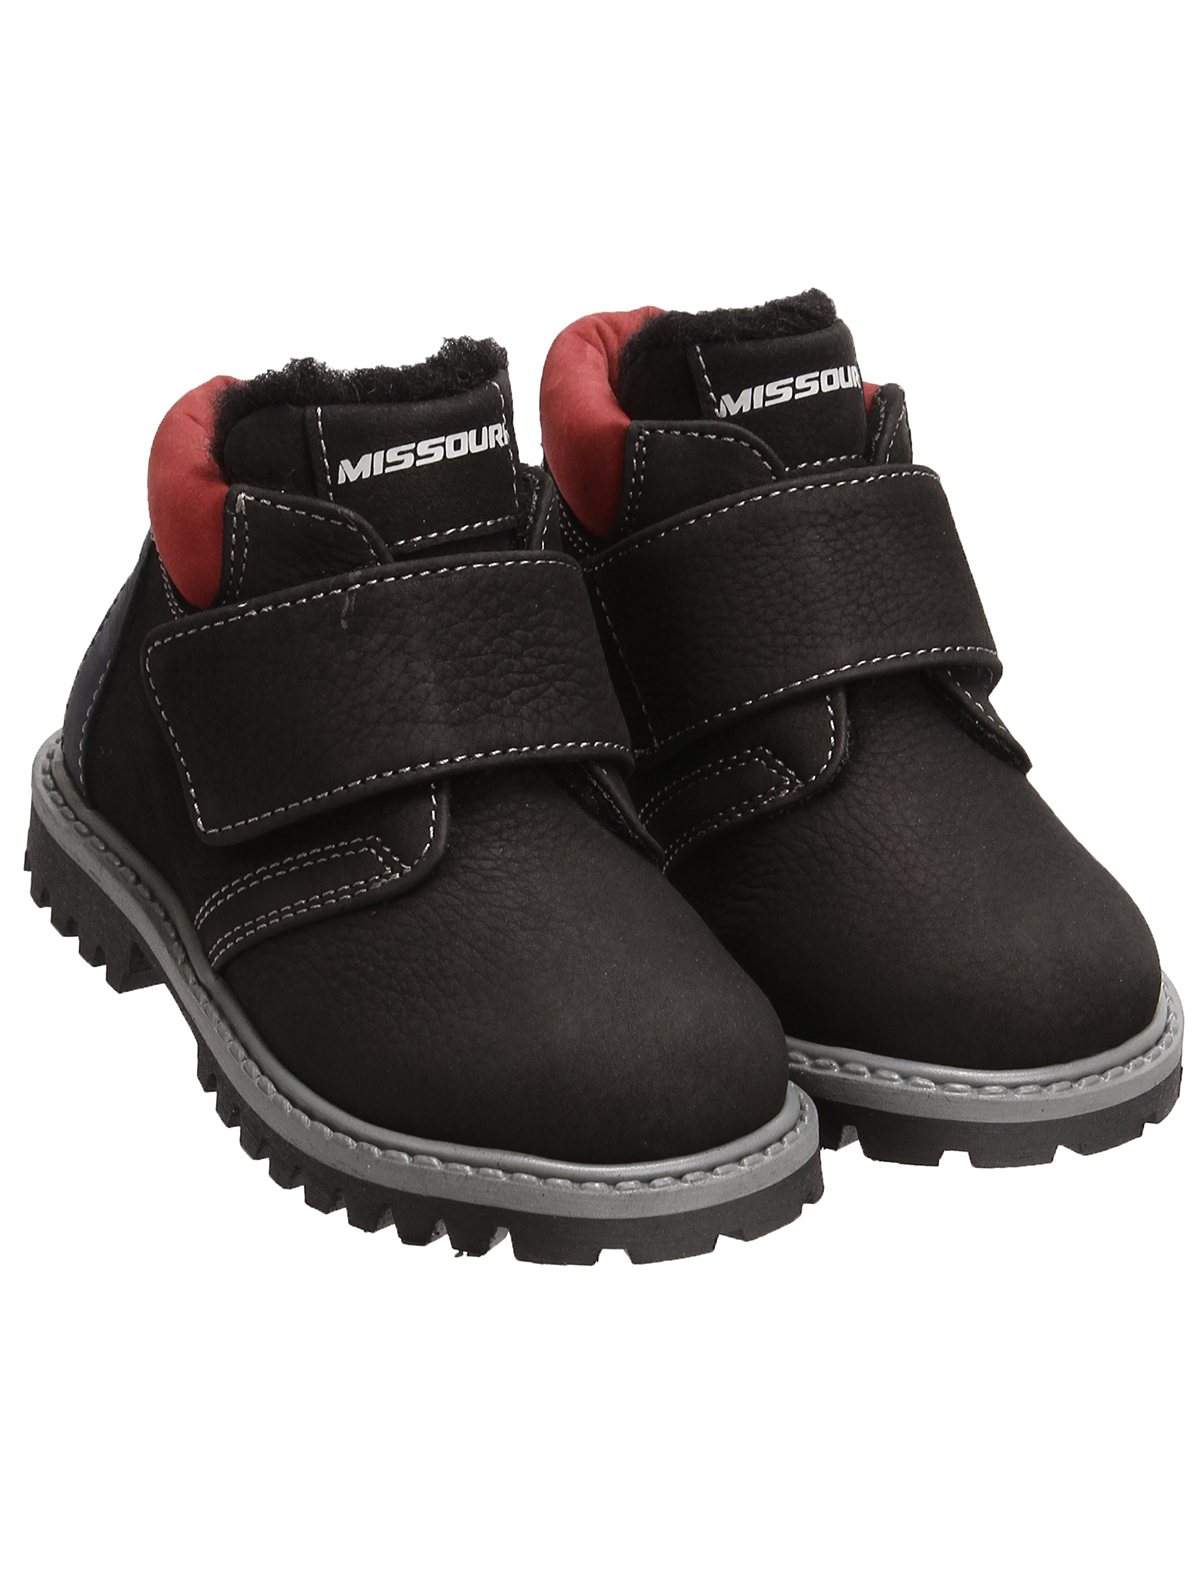 Ботинки Missouri 2480863, цвет черный, размер 27 2034519281351 - фото 1